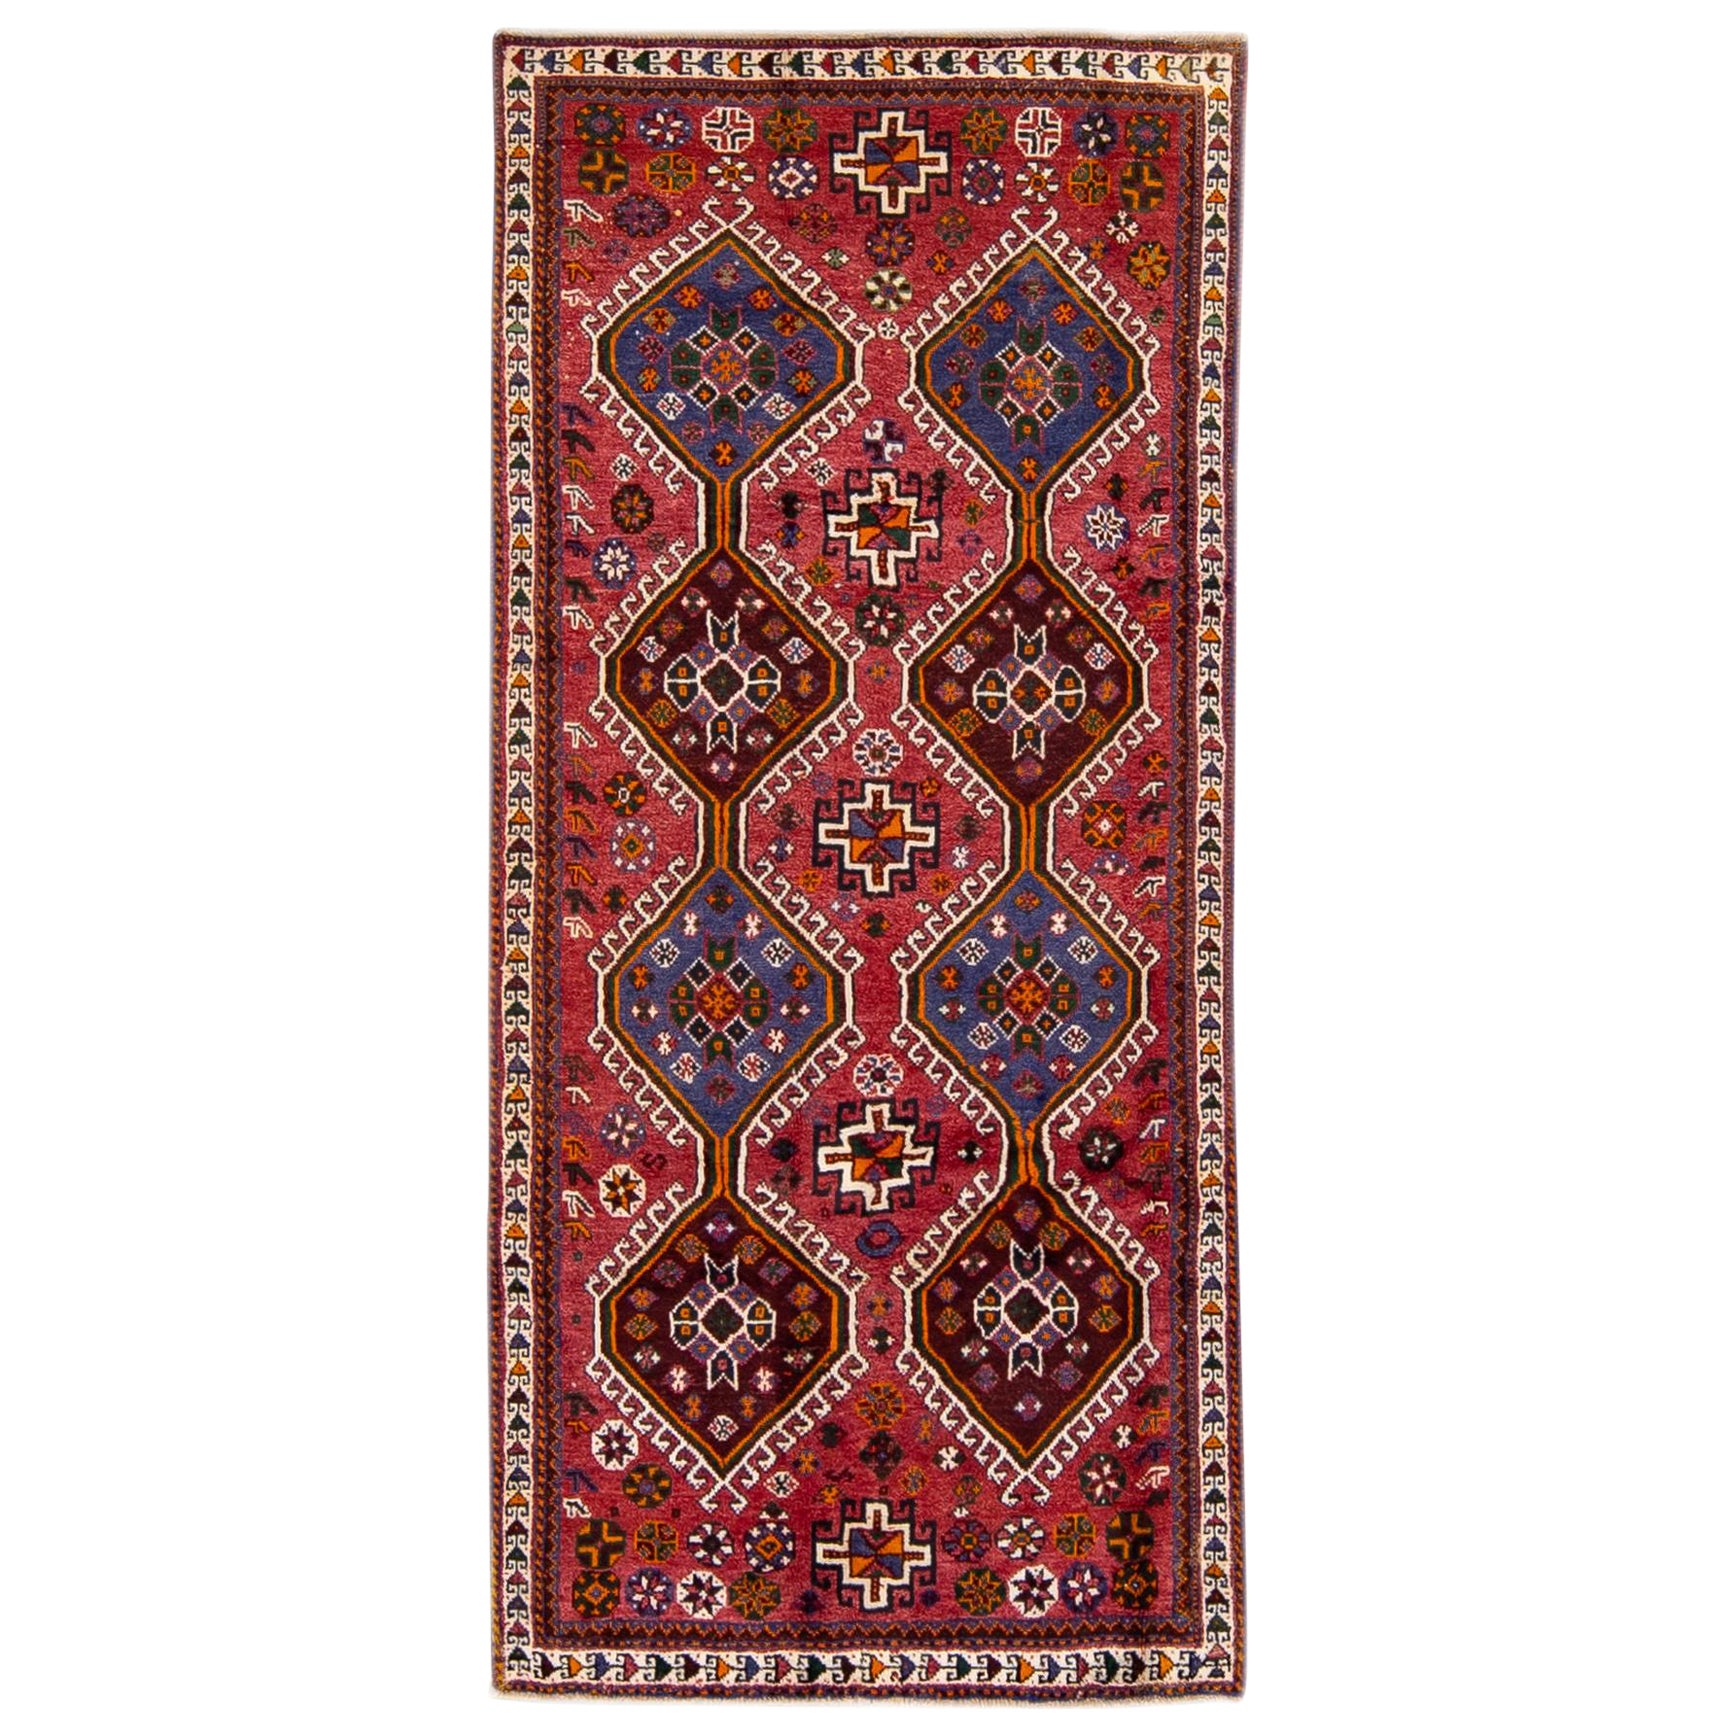 Vintage Persian Handmade Tribal Designed Red Wool Rug